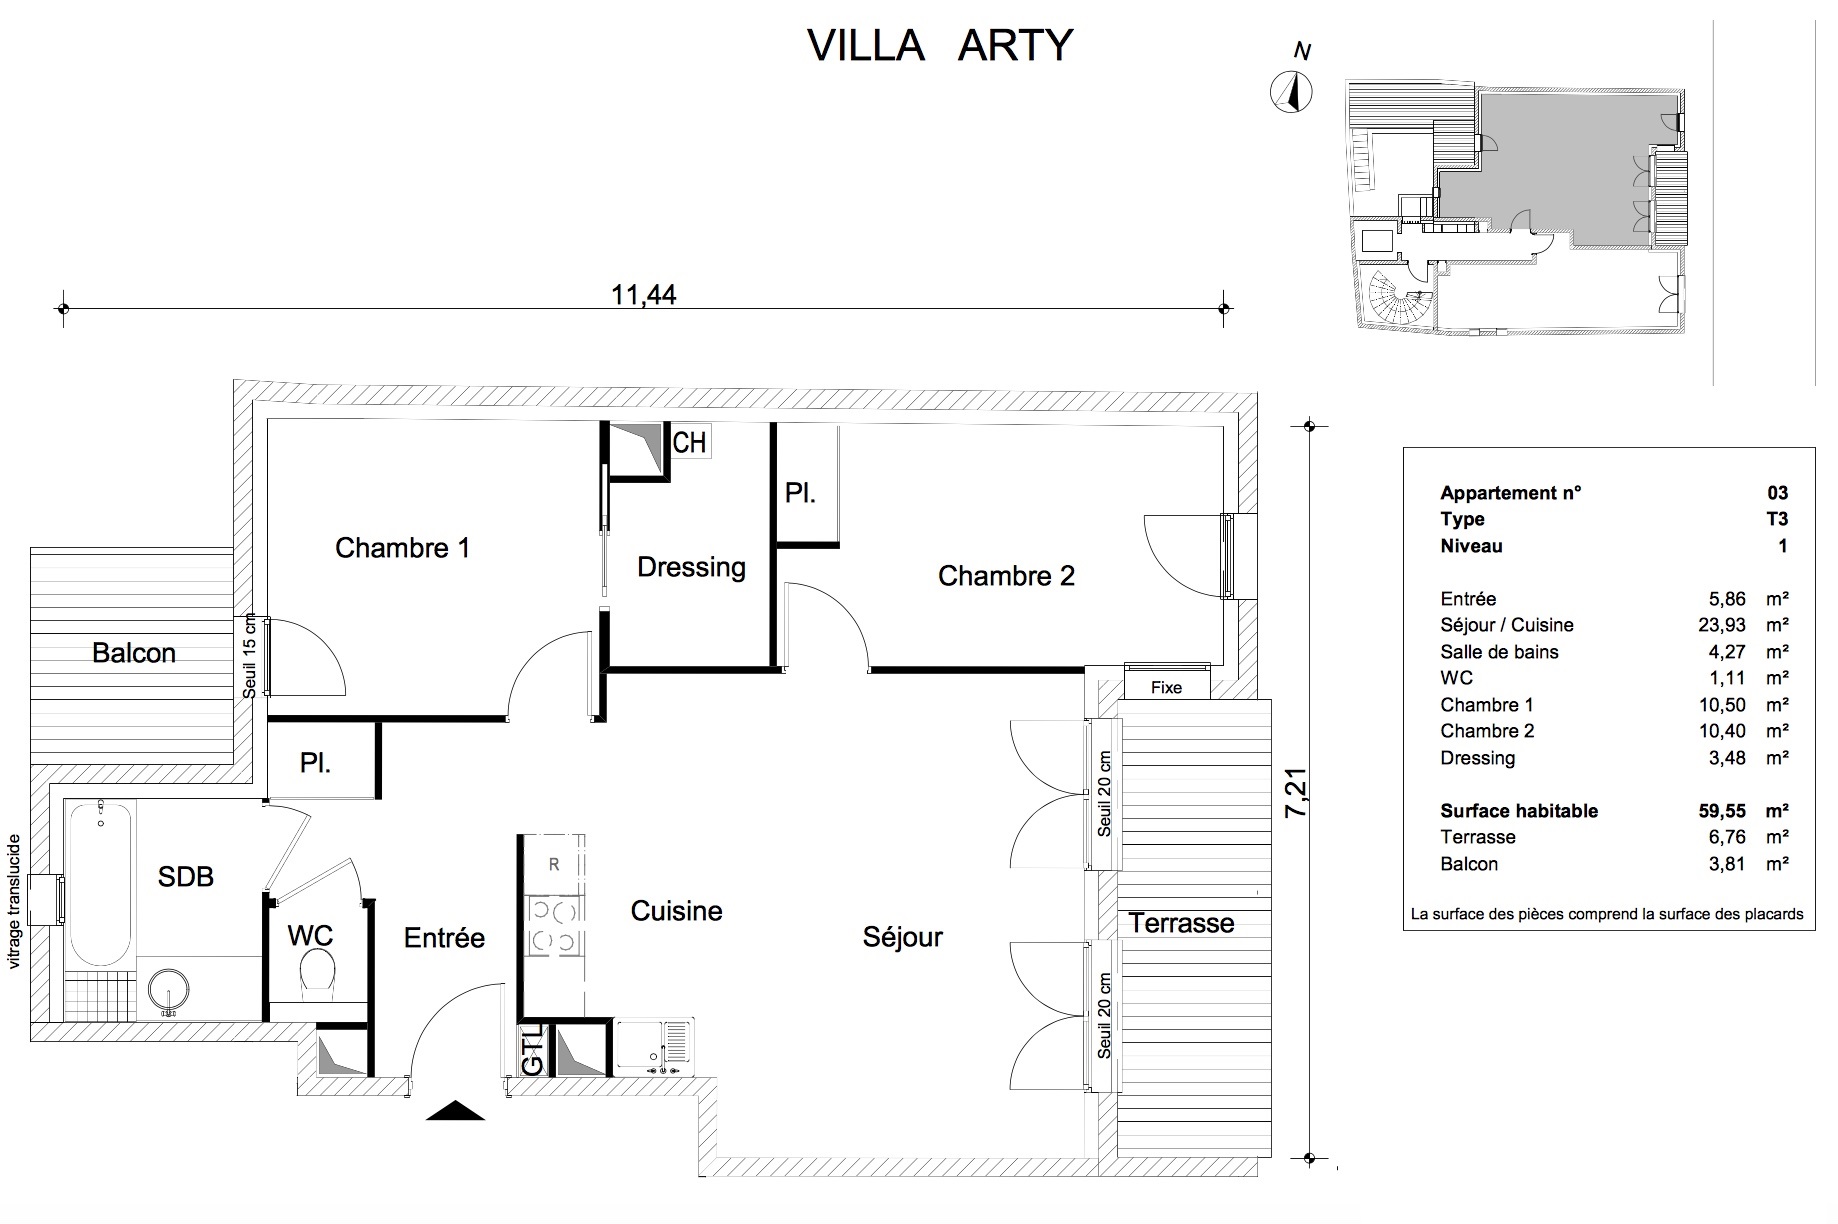 T3 - 59,55 m² - 1er étage - Loggia 6,76 m² - Balcon 3,81 m² -  VENDU